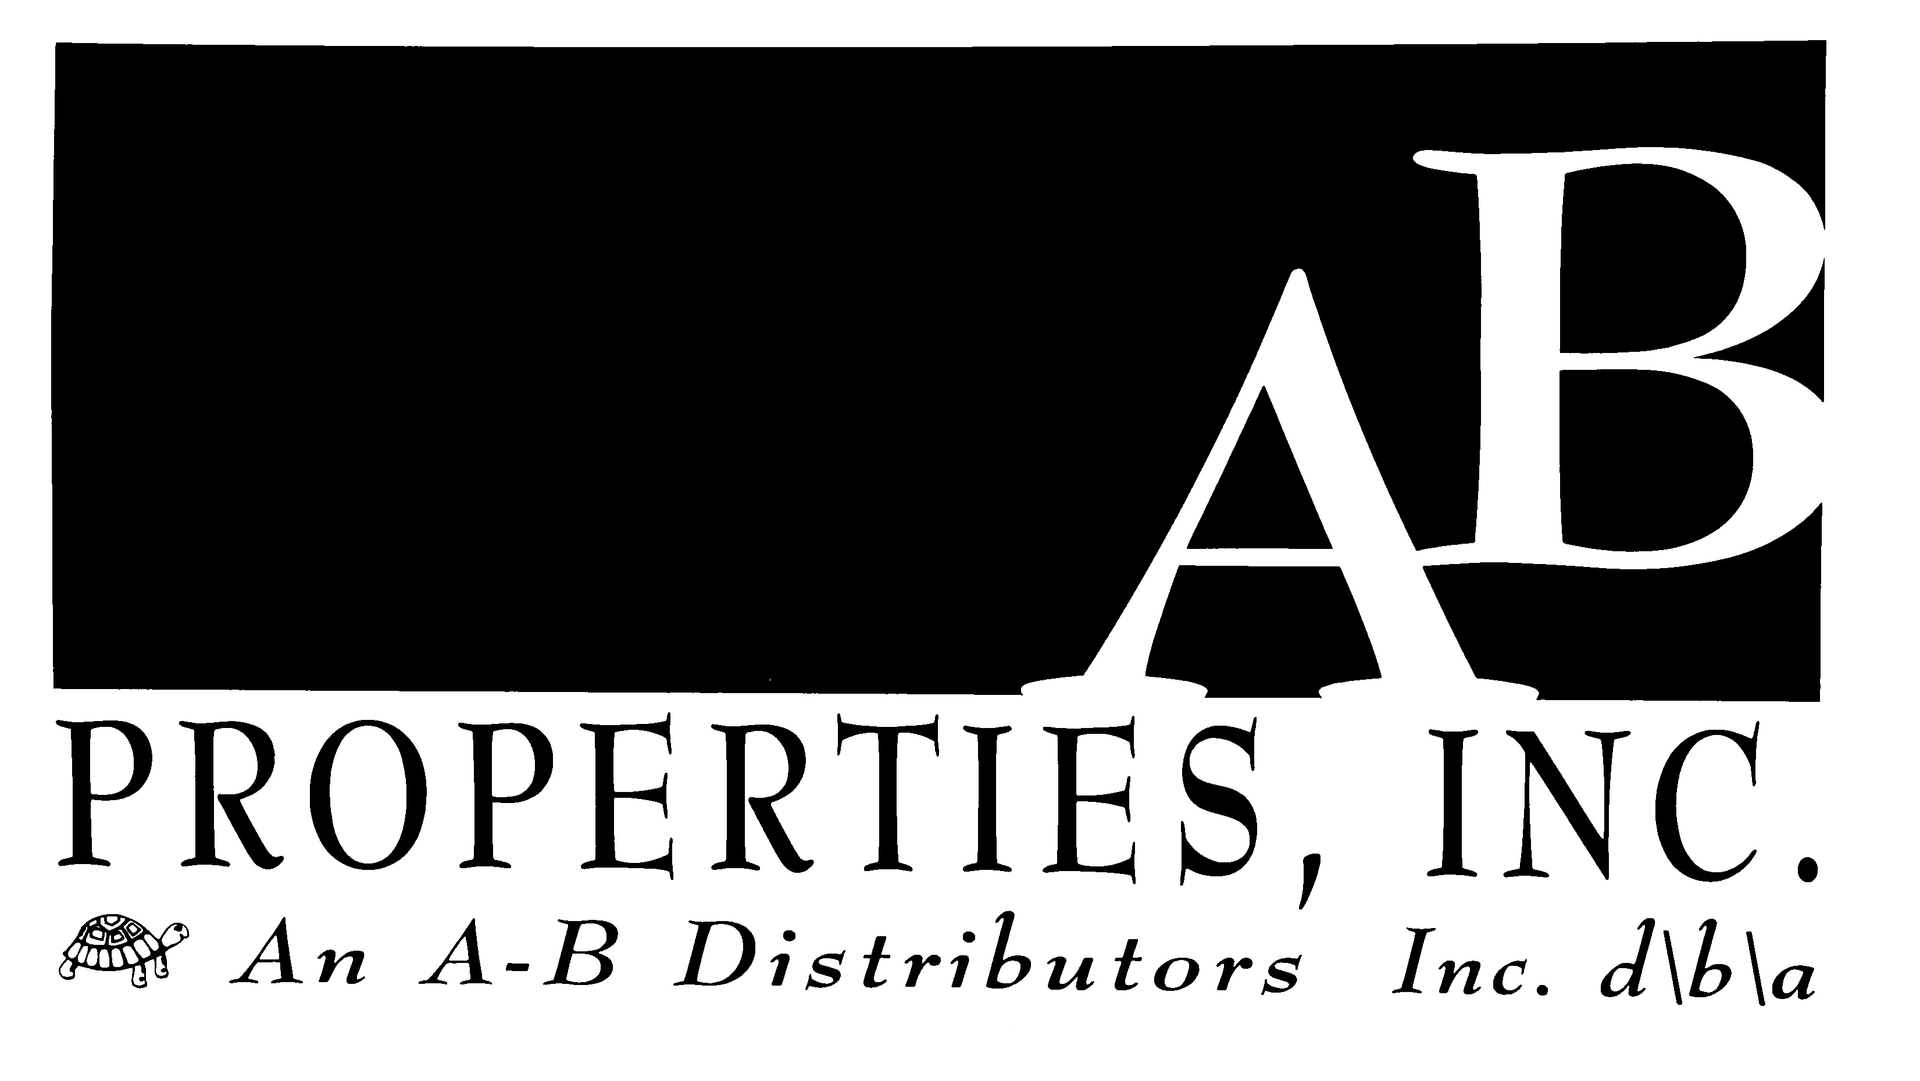 A-B Distributors, Inc.